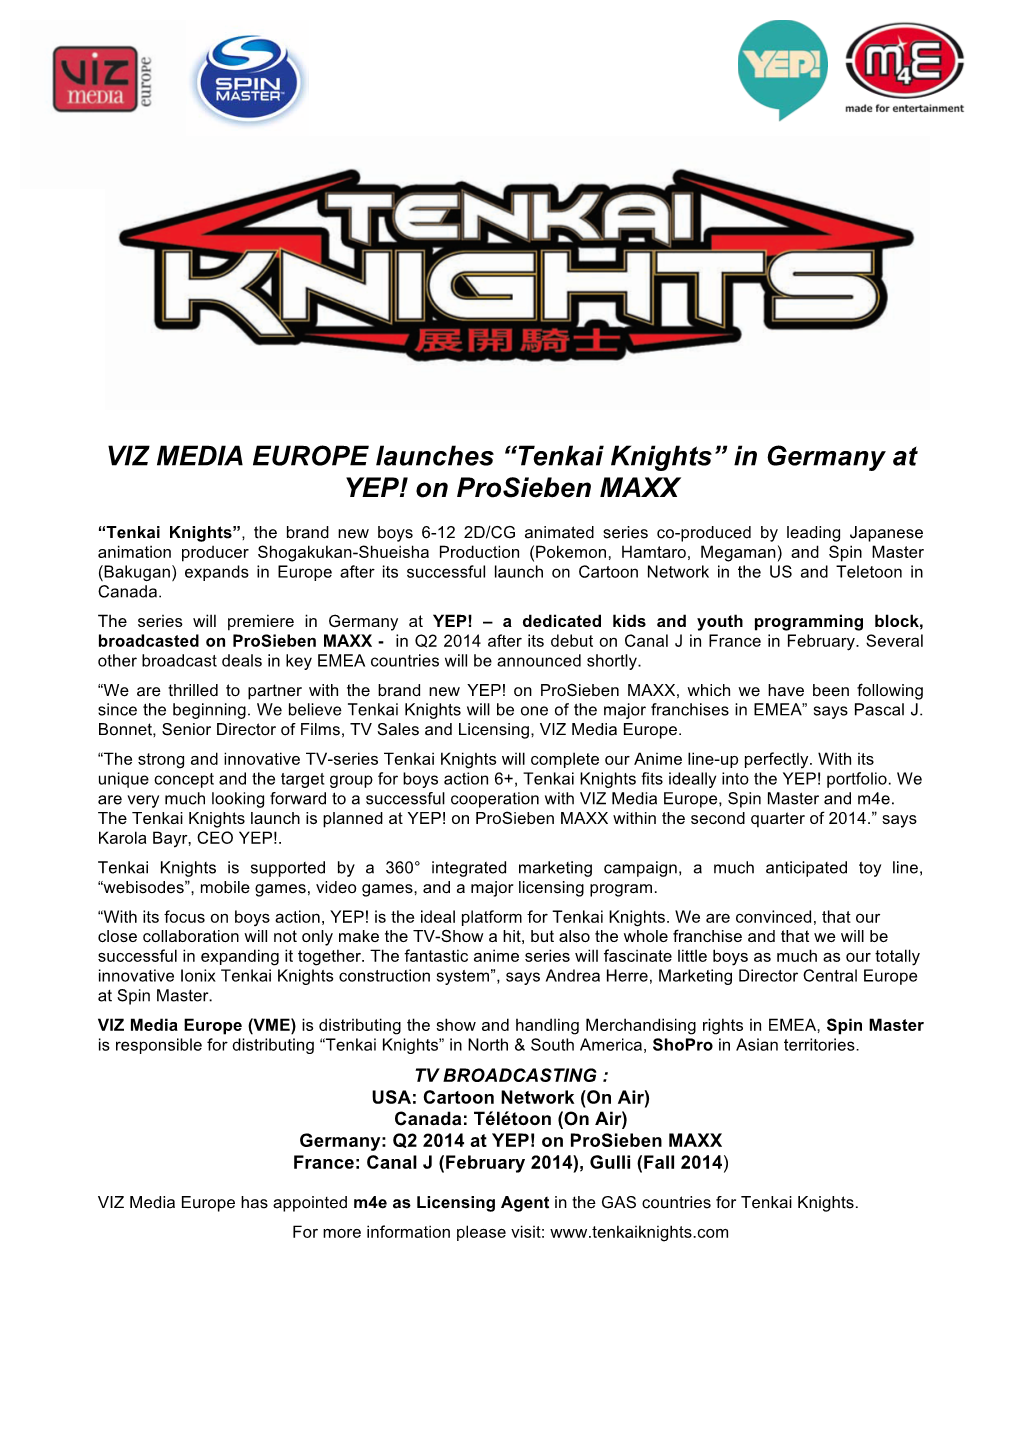 Tenkai Knights” in Germany at YEP! on Prosieben MAXX